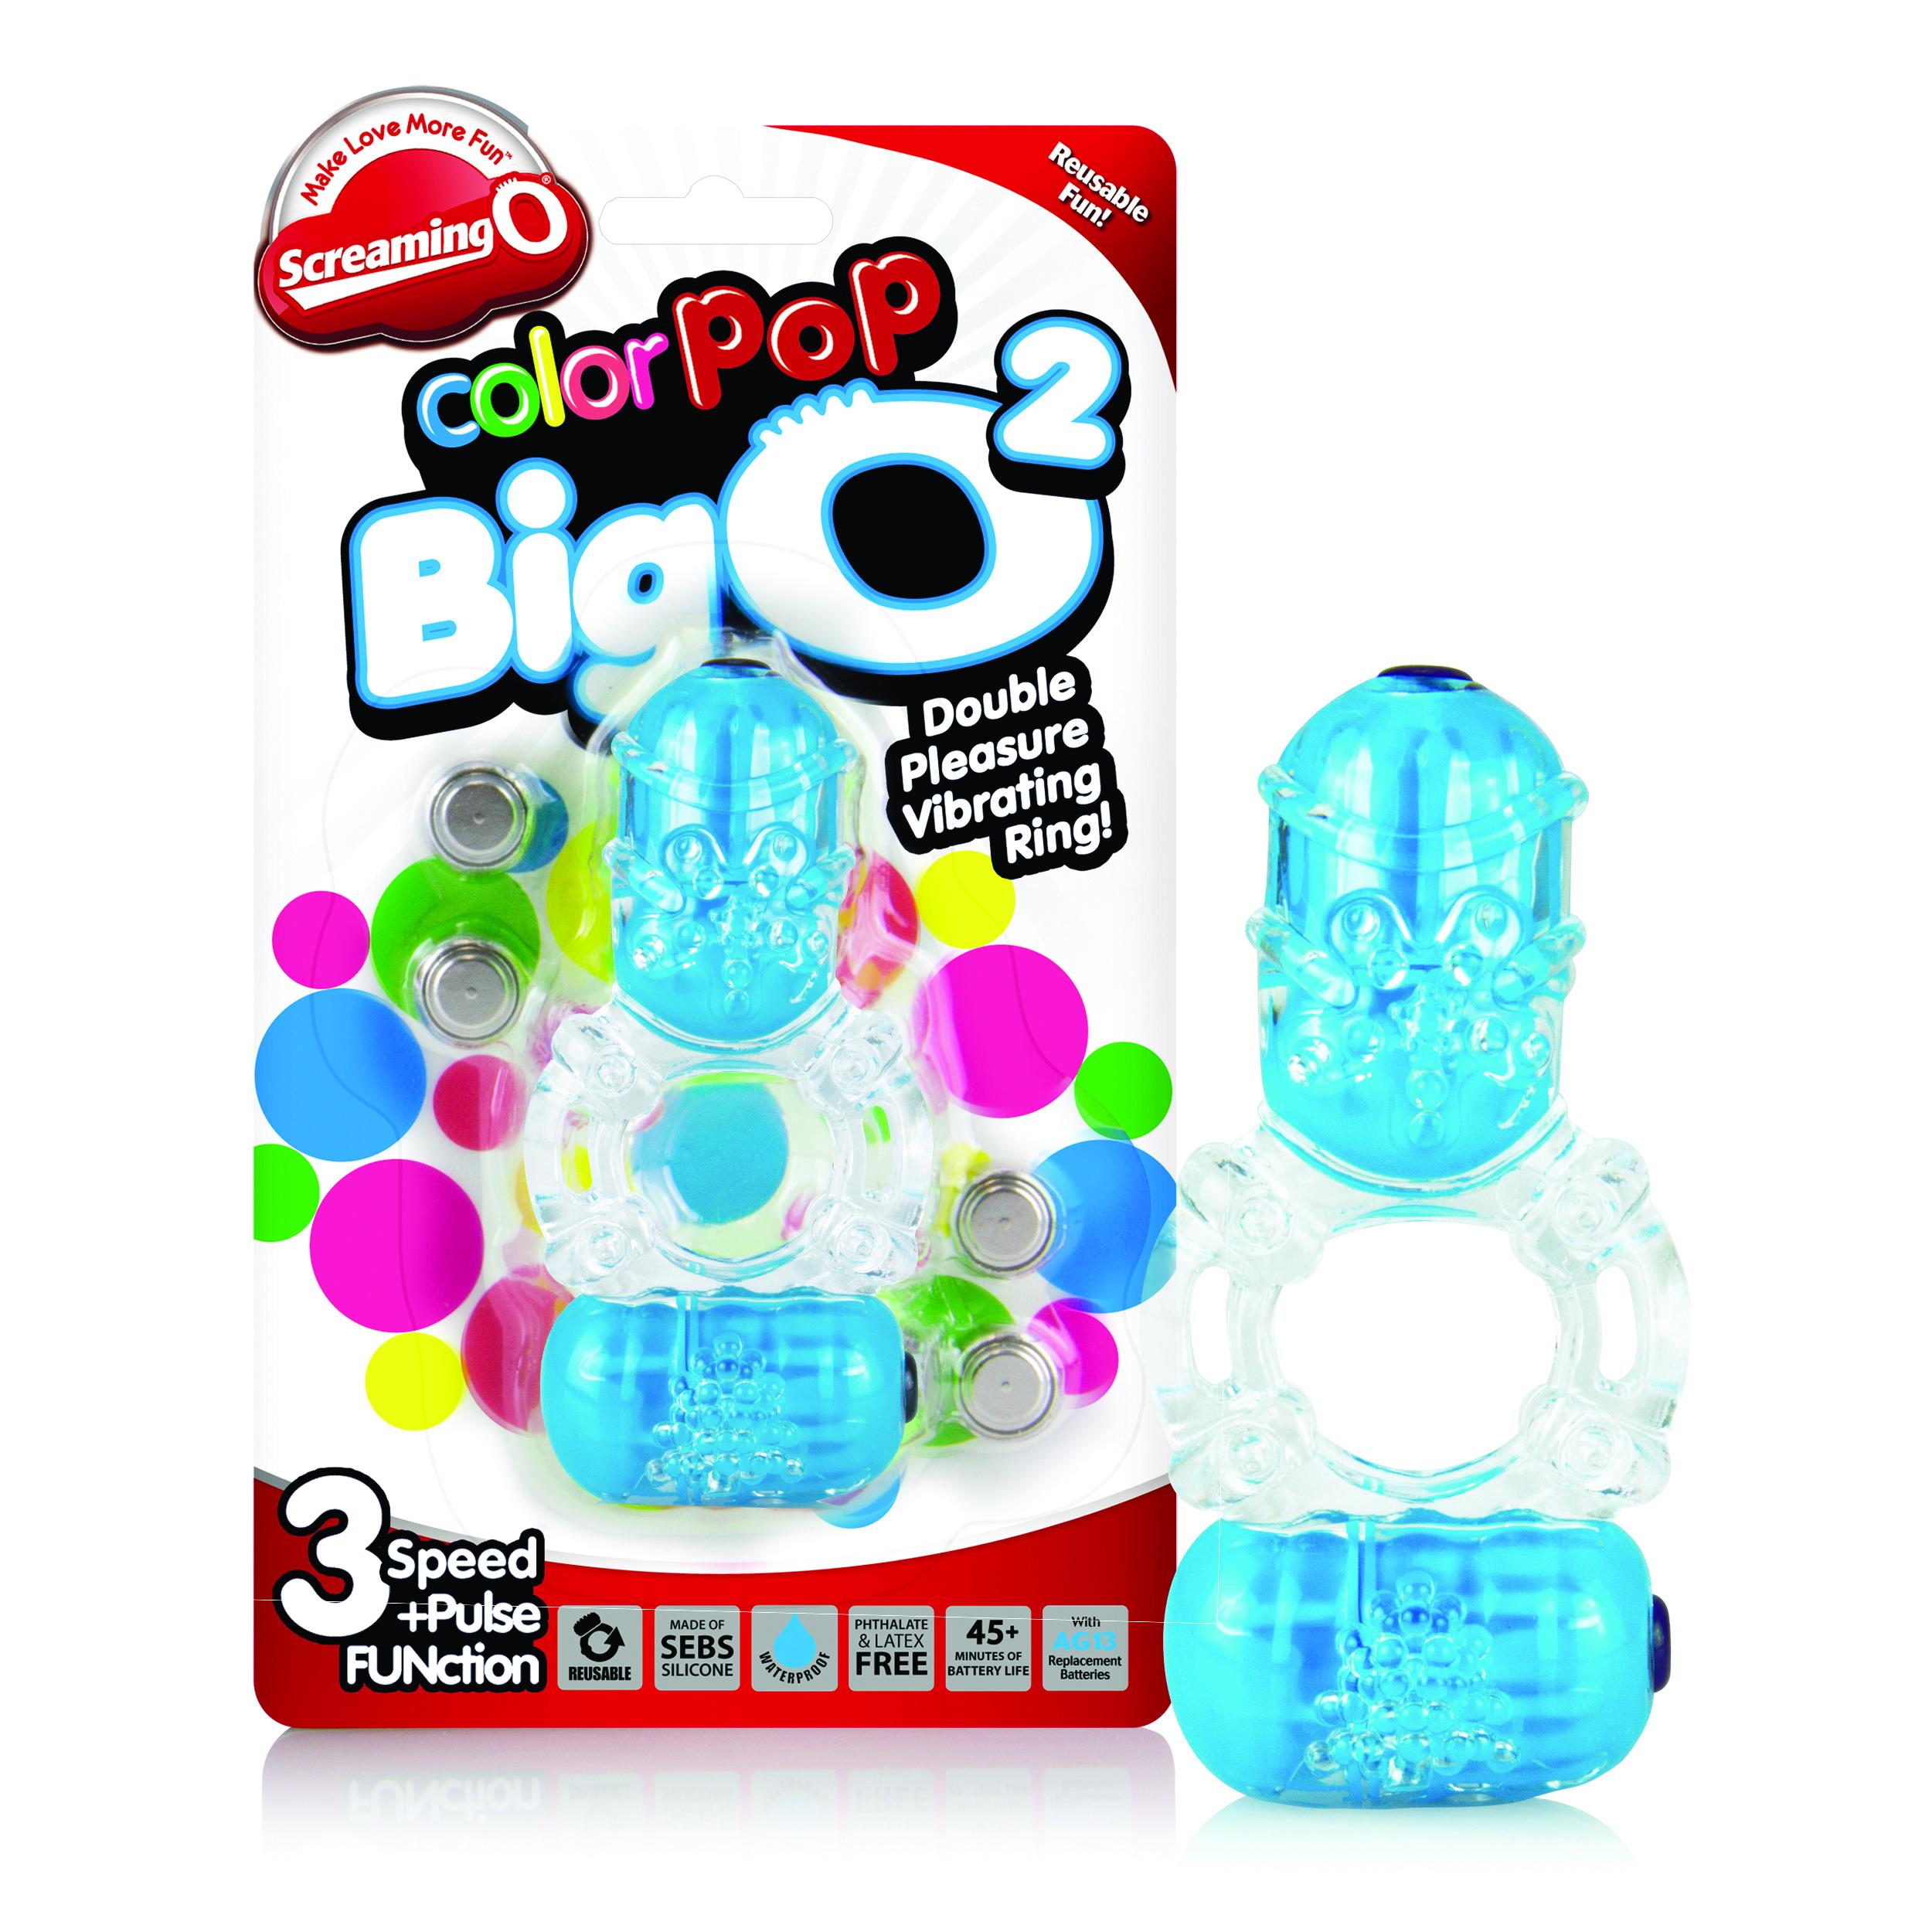 The Screaming O - Color Pop Big O2 Blue